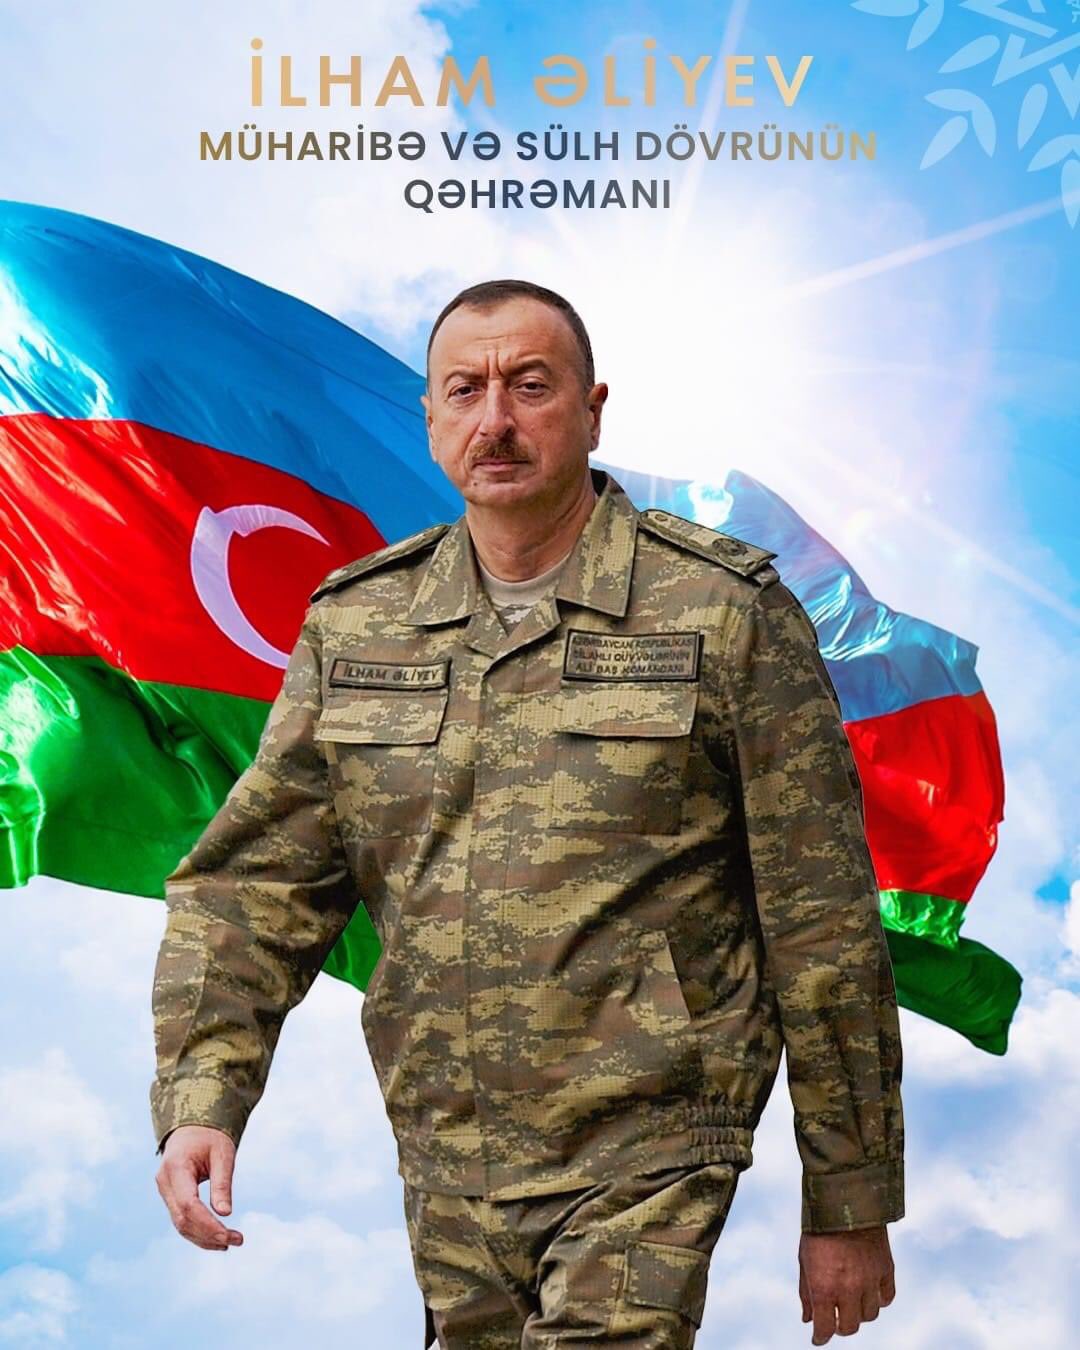 Happy birthday, Mr. President Ilham Aliyev !  